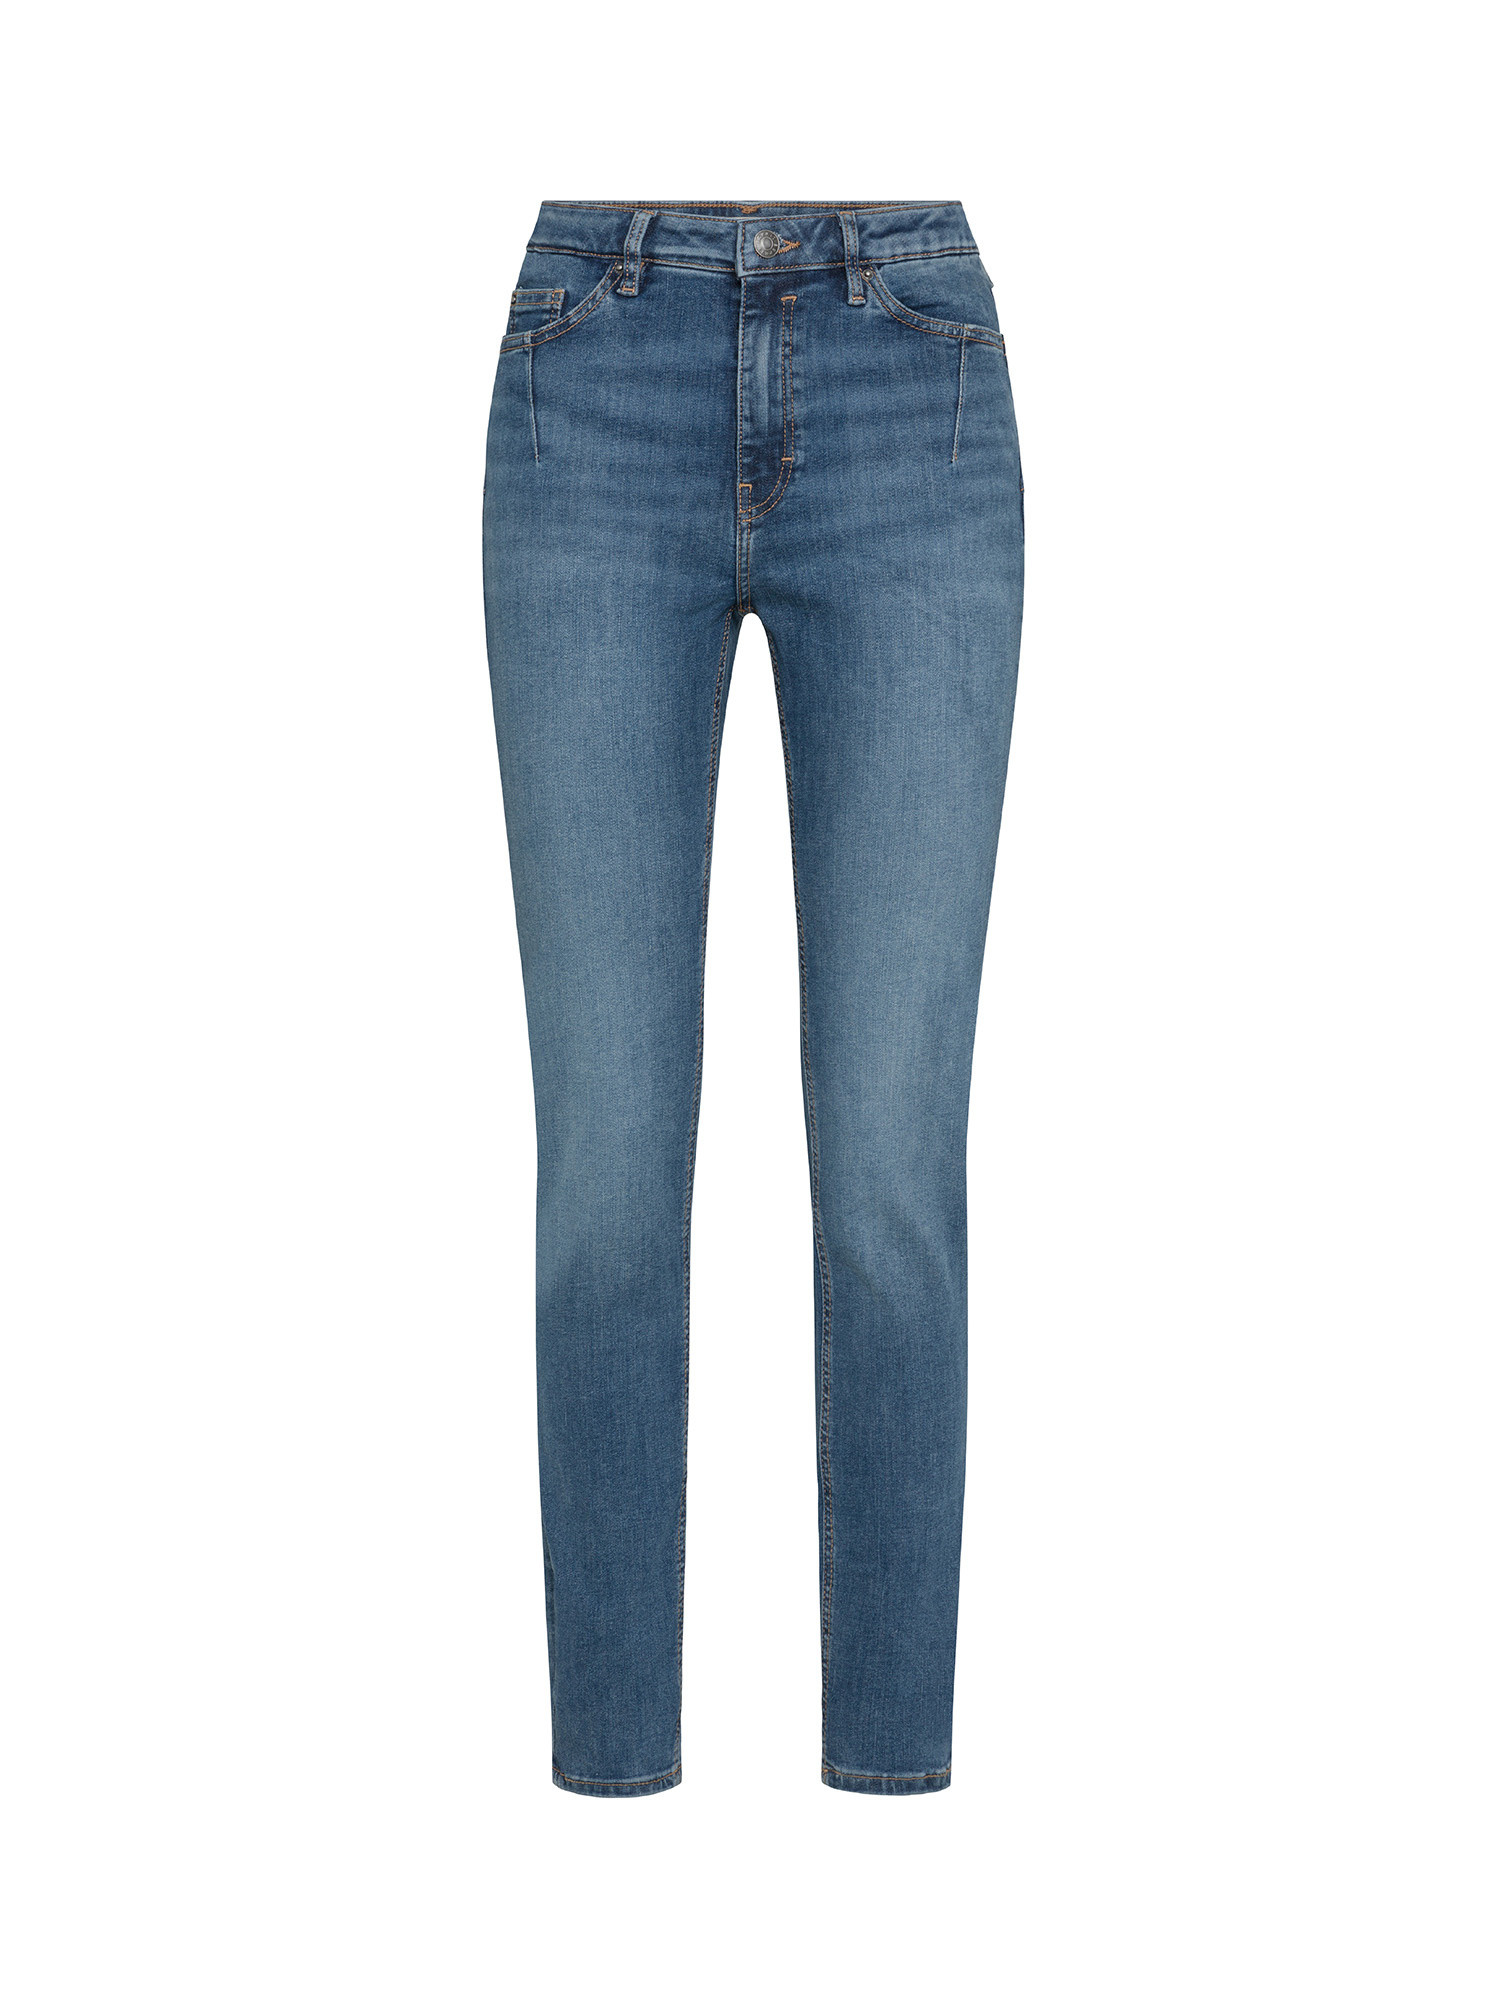 Esprit - Jeans skinny cinque tasche, Denim, large image number 0